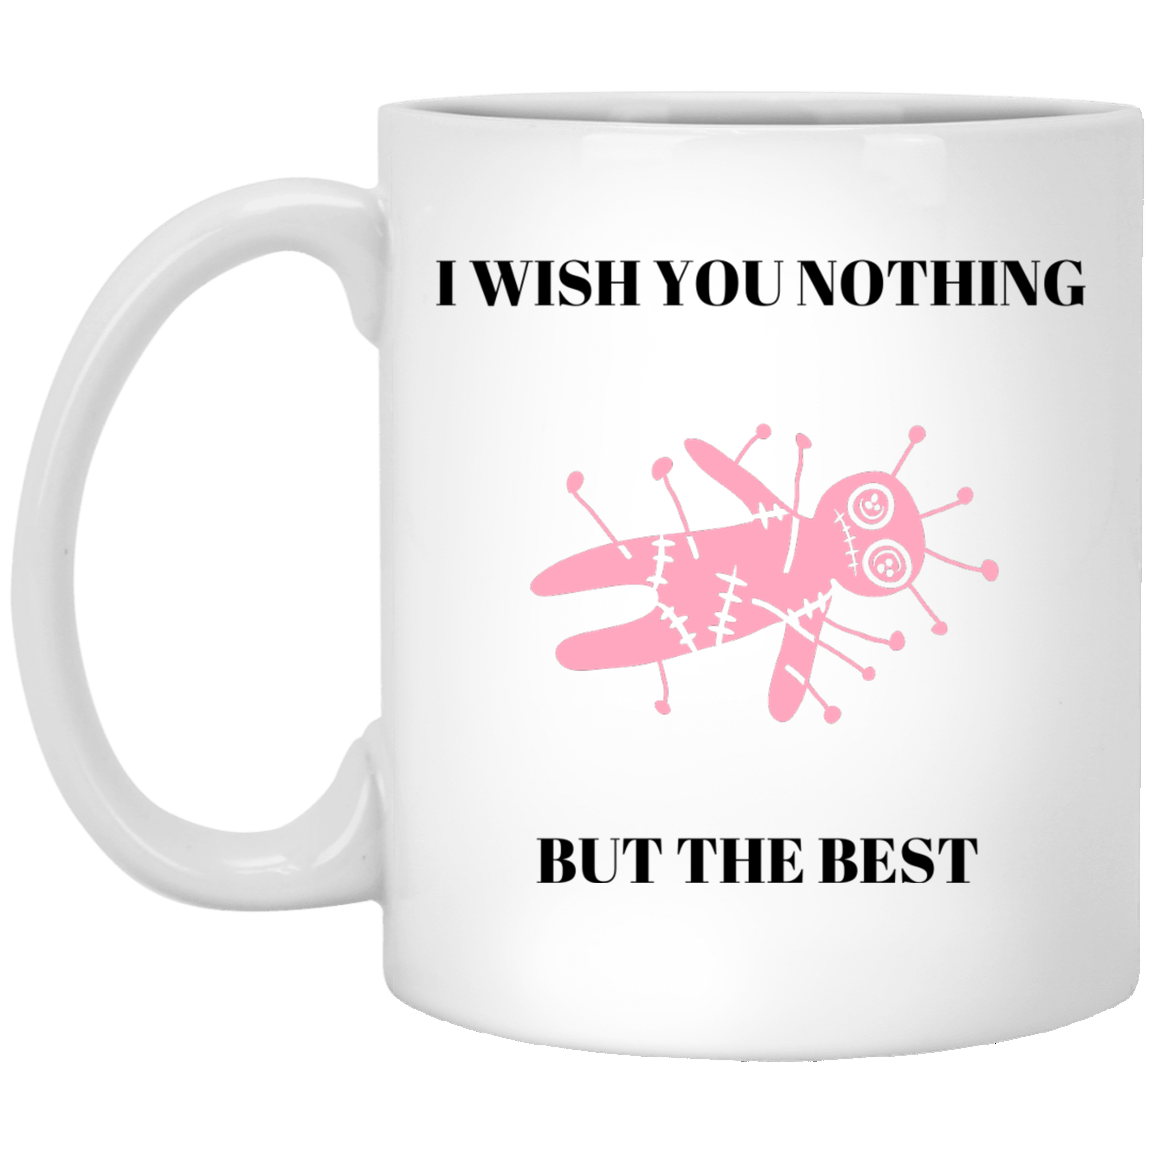 Nothing But the Best | White Mug